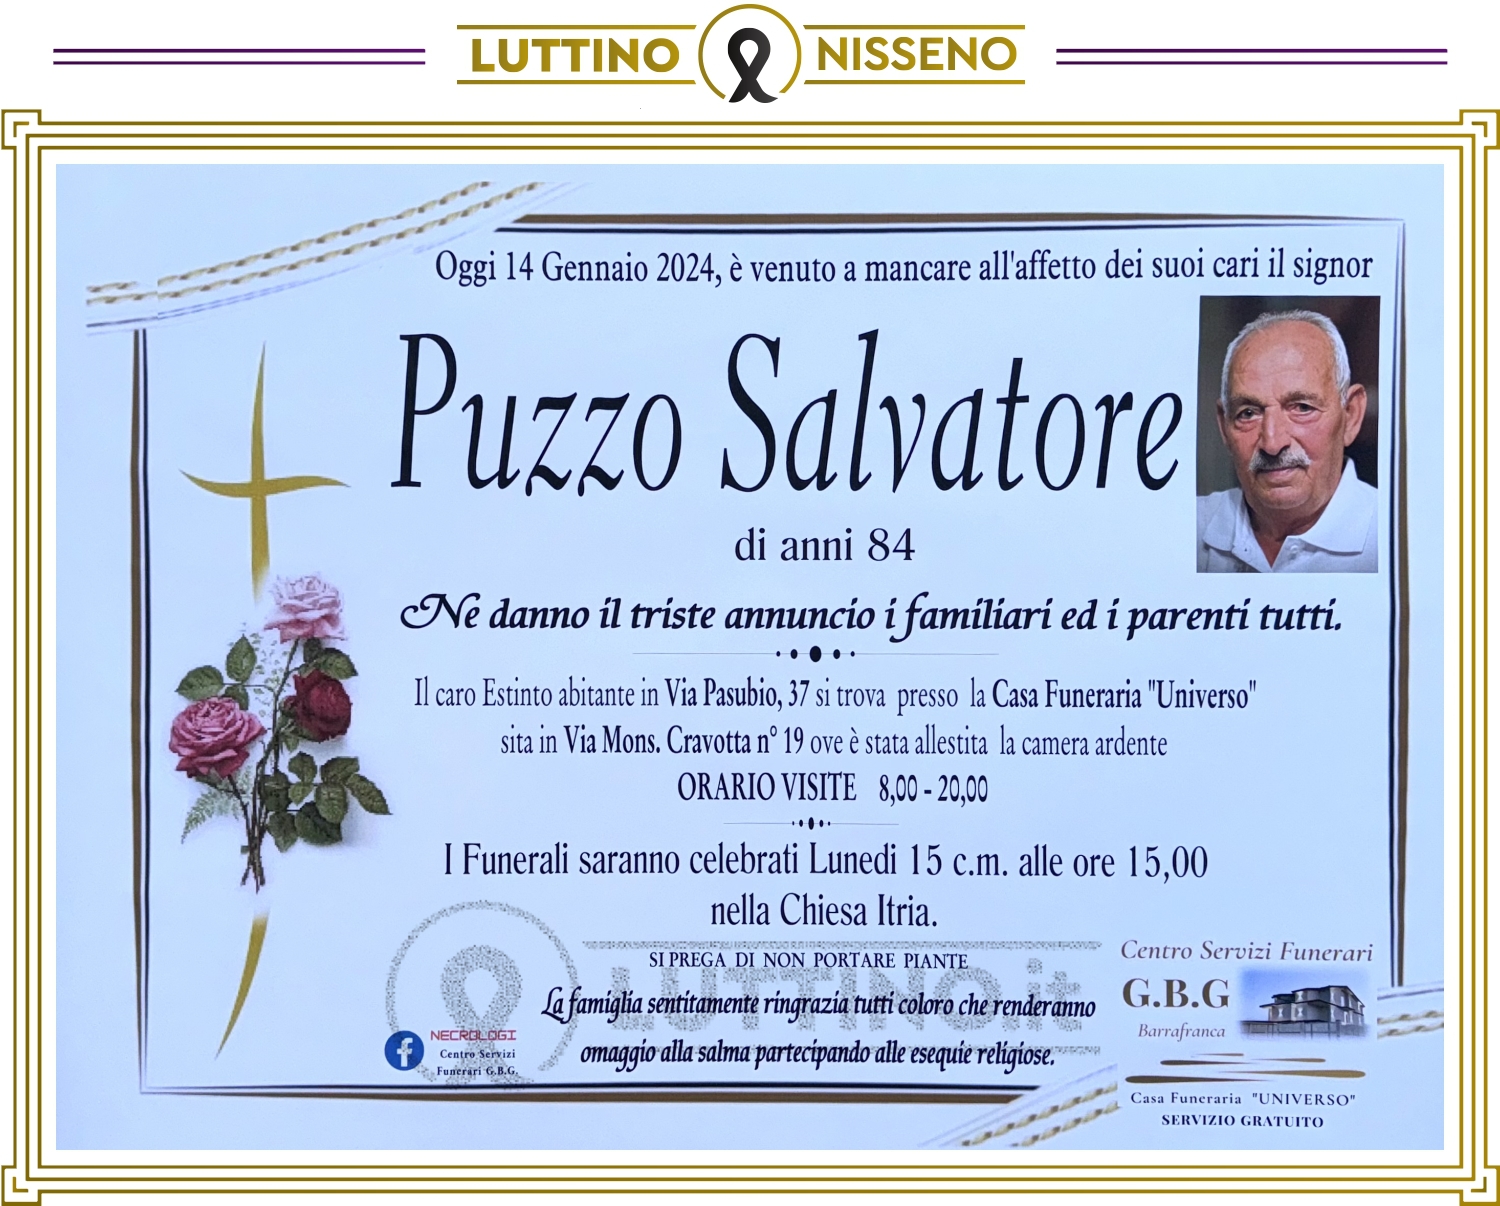 Salvatore Puzzo